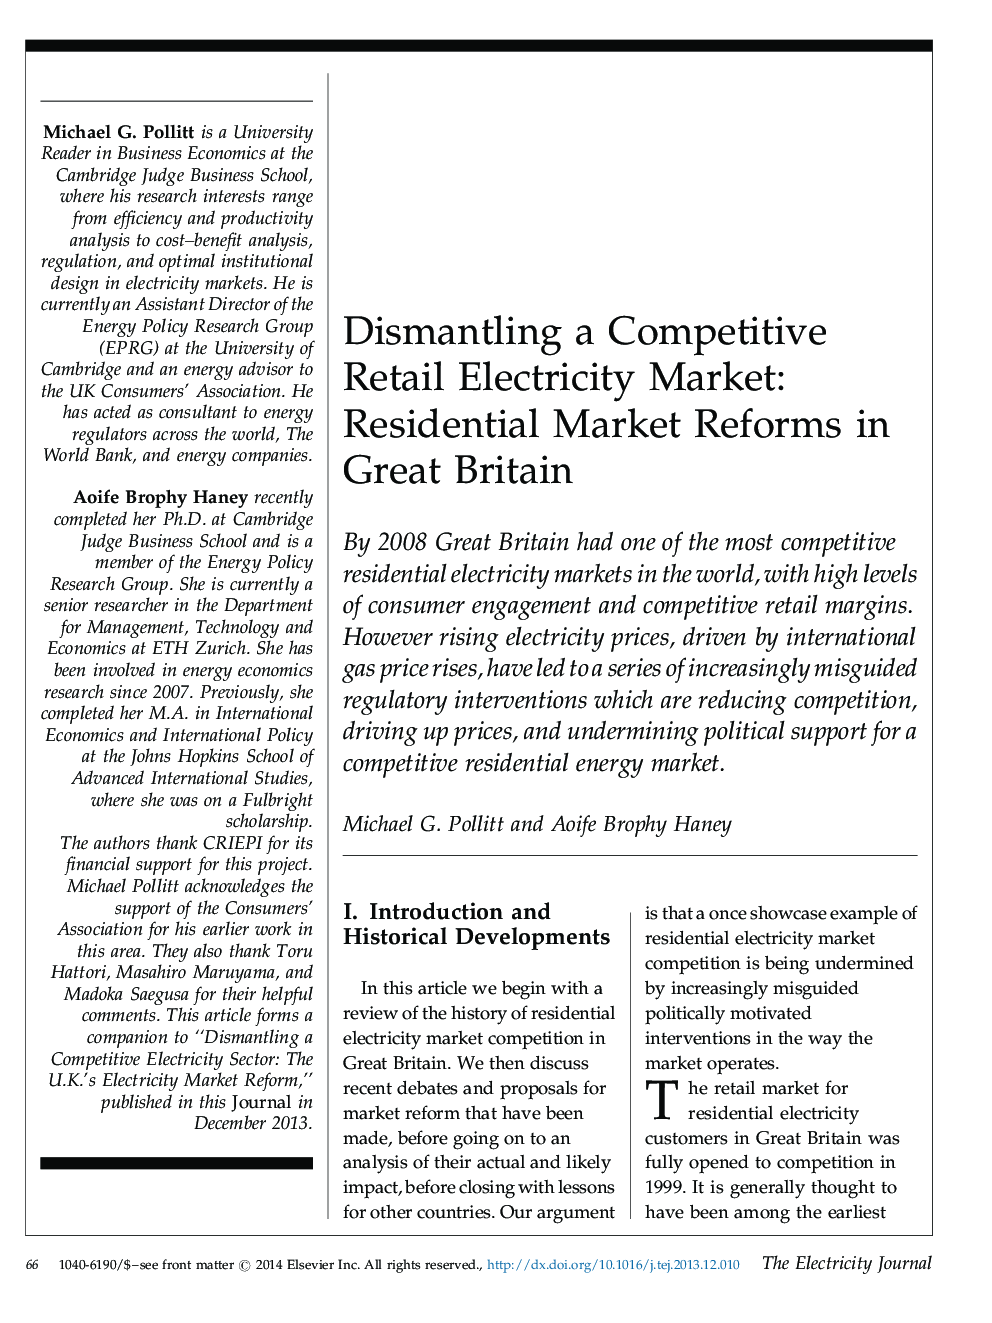 رفع بازار رقابتی خرده فروشی برق: اصلاحات بازار مسکن در بریتانیا 